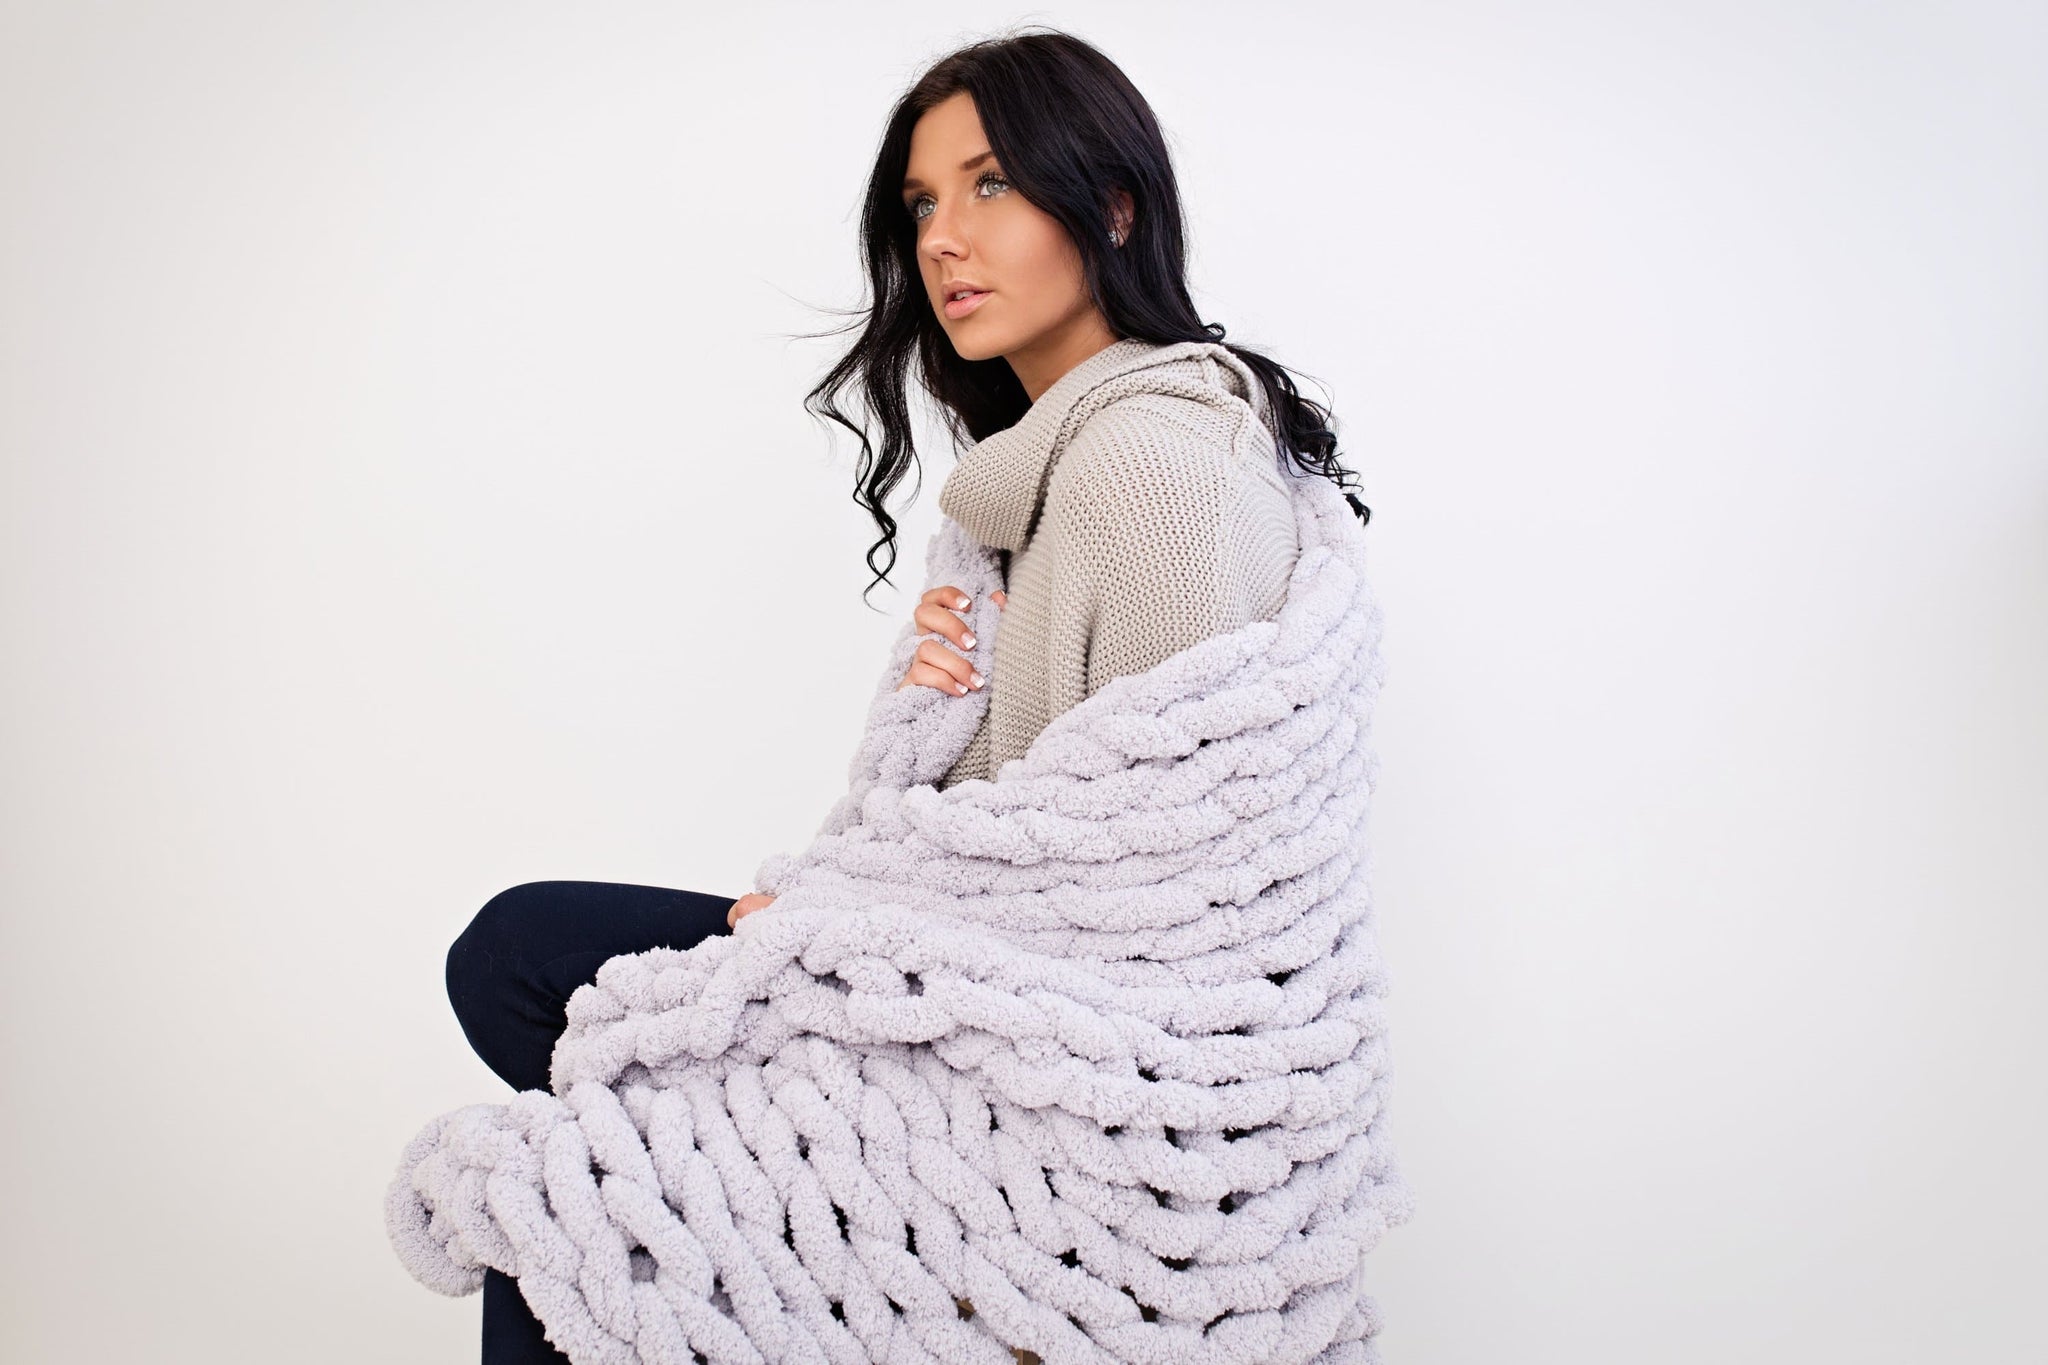 DIY Arm Knitting Kit for a blanket 40x60 – BeCozi